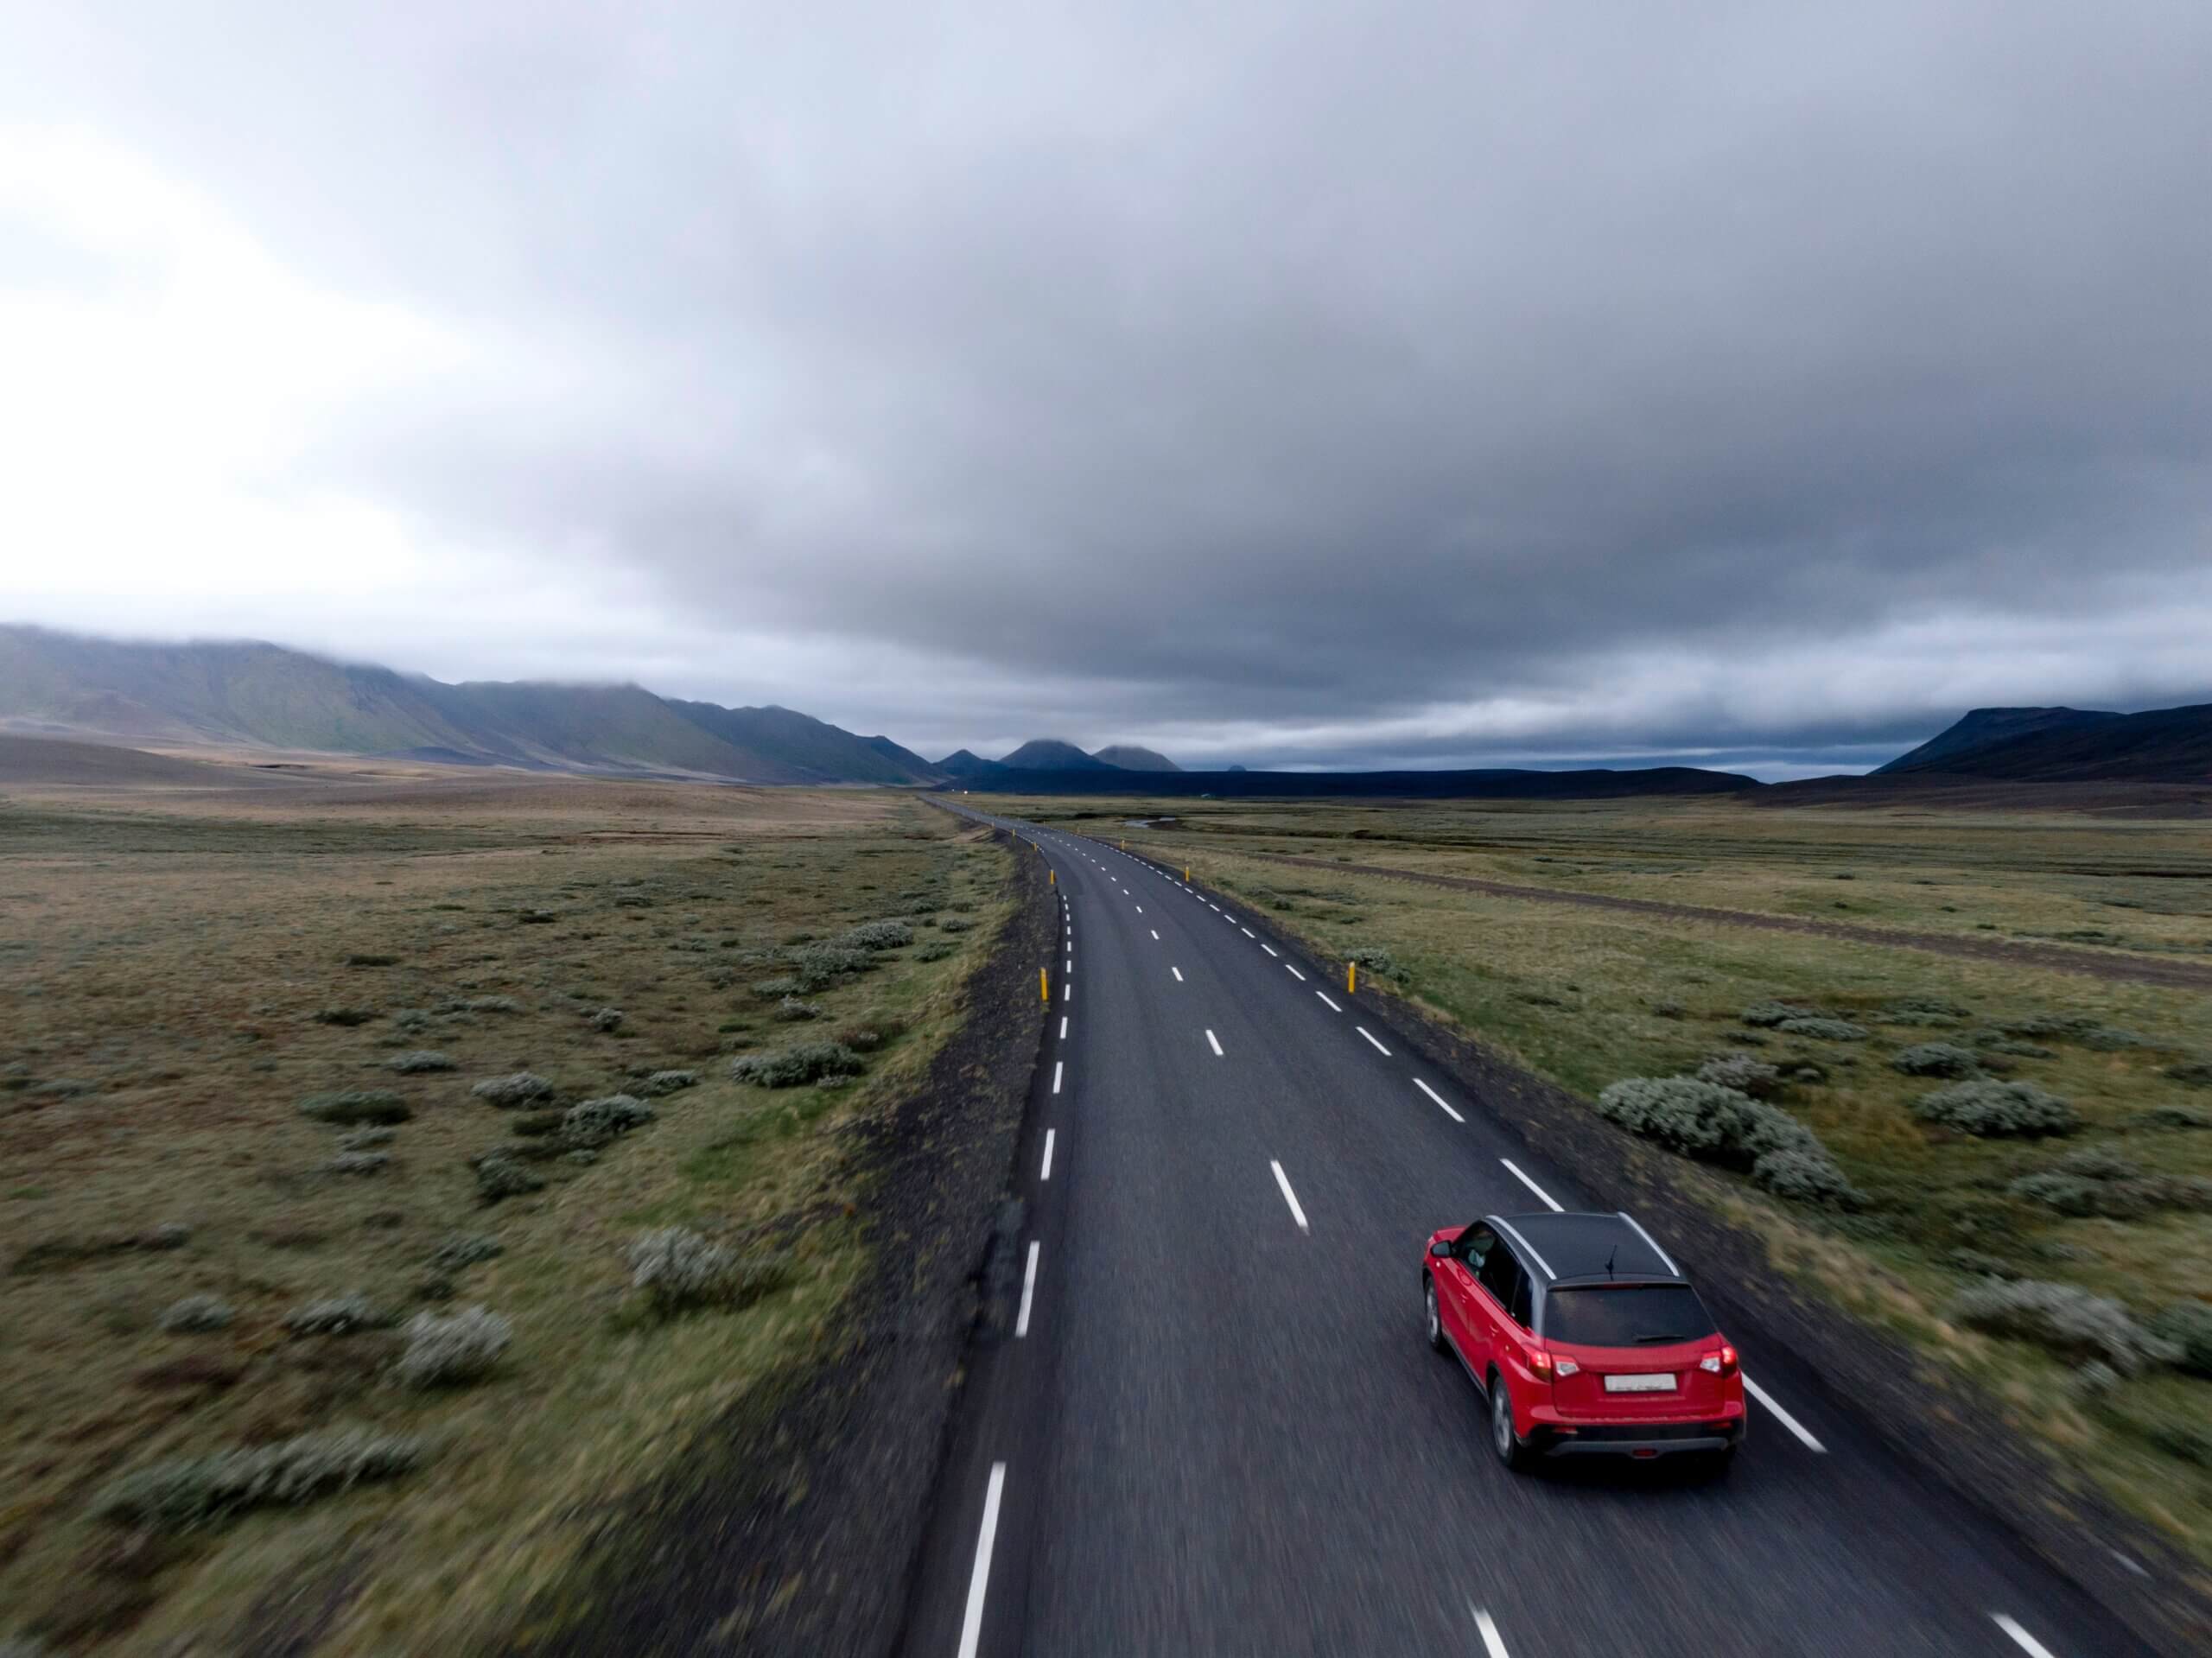 Um carro vermelho está em movimento em uma pista de duas faixas, na qual ele é o único veículo à vista. Ao redor da pista é possível ver vegetações baixas. No horizonte estão algumas nuvens e um terreno montanhoso 